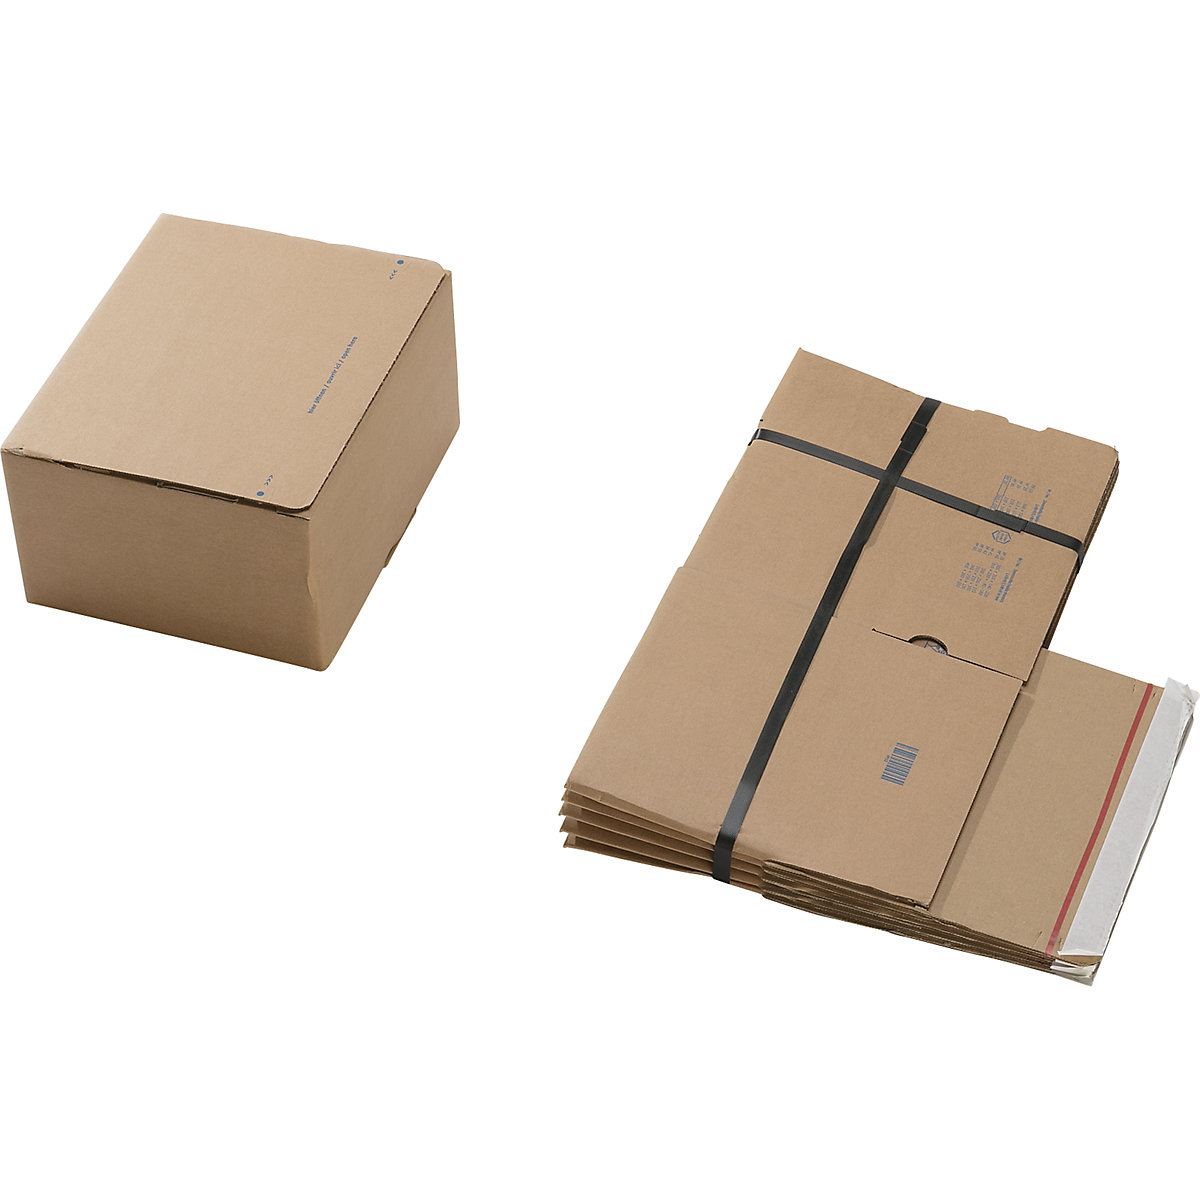 Caixa de cartão de envio, com fundo automático e fecho autocolante, dimensões interiores CxLxA 260 x 220 x 130 mm, embalagem de 100 unidades-4